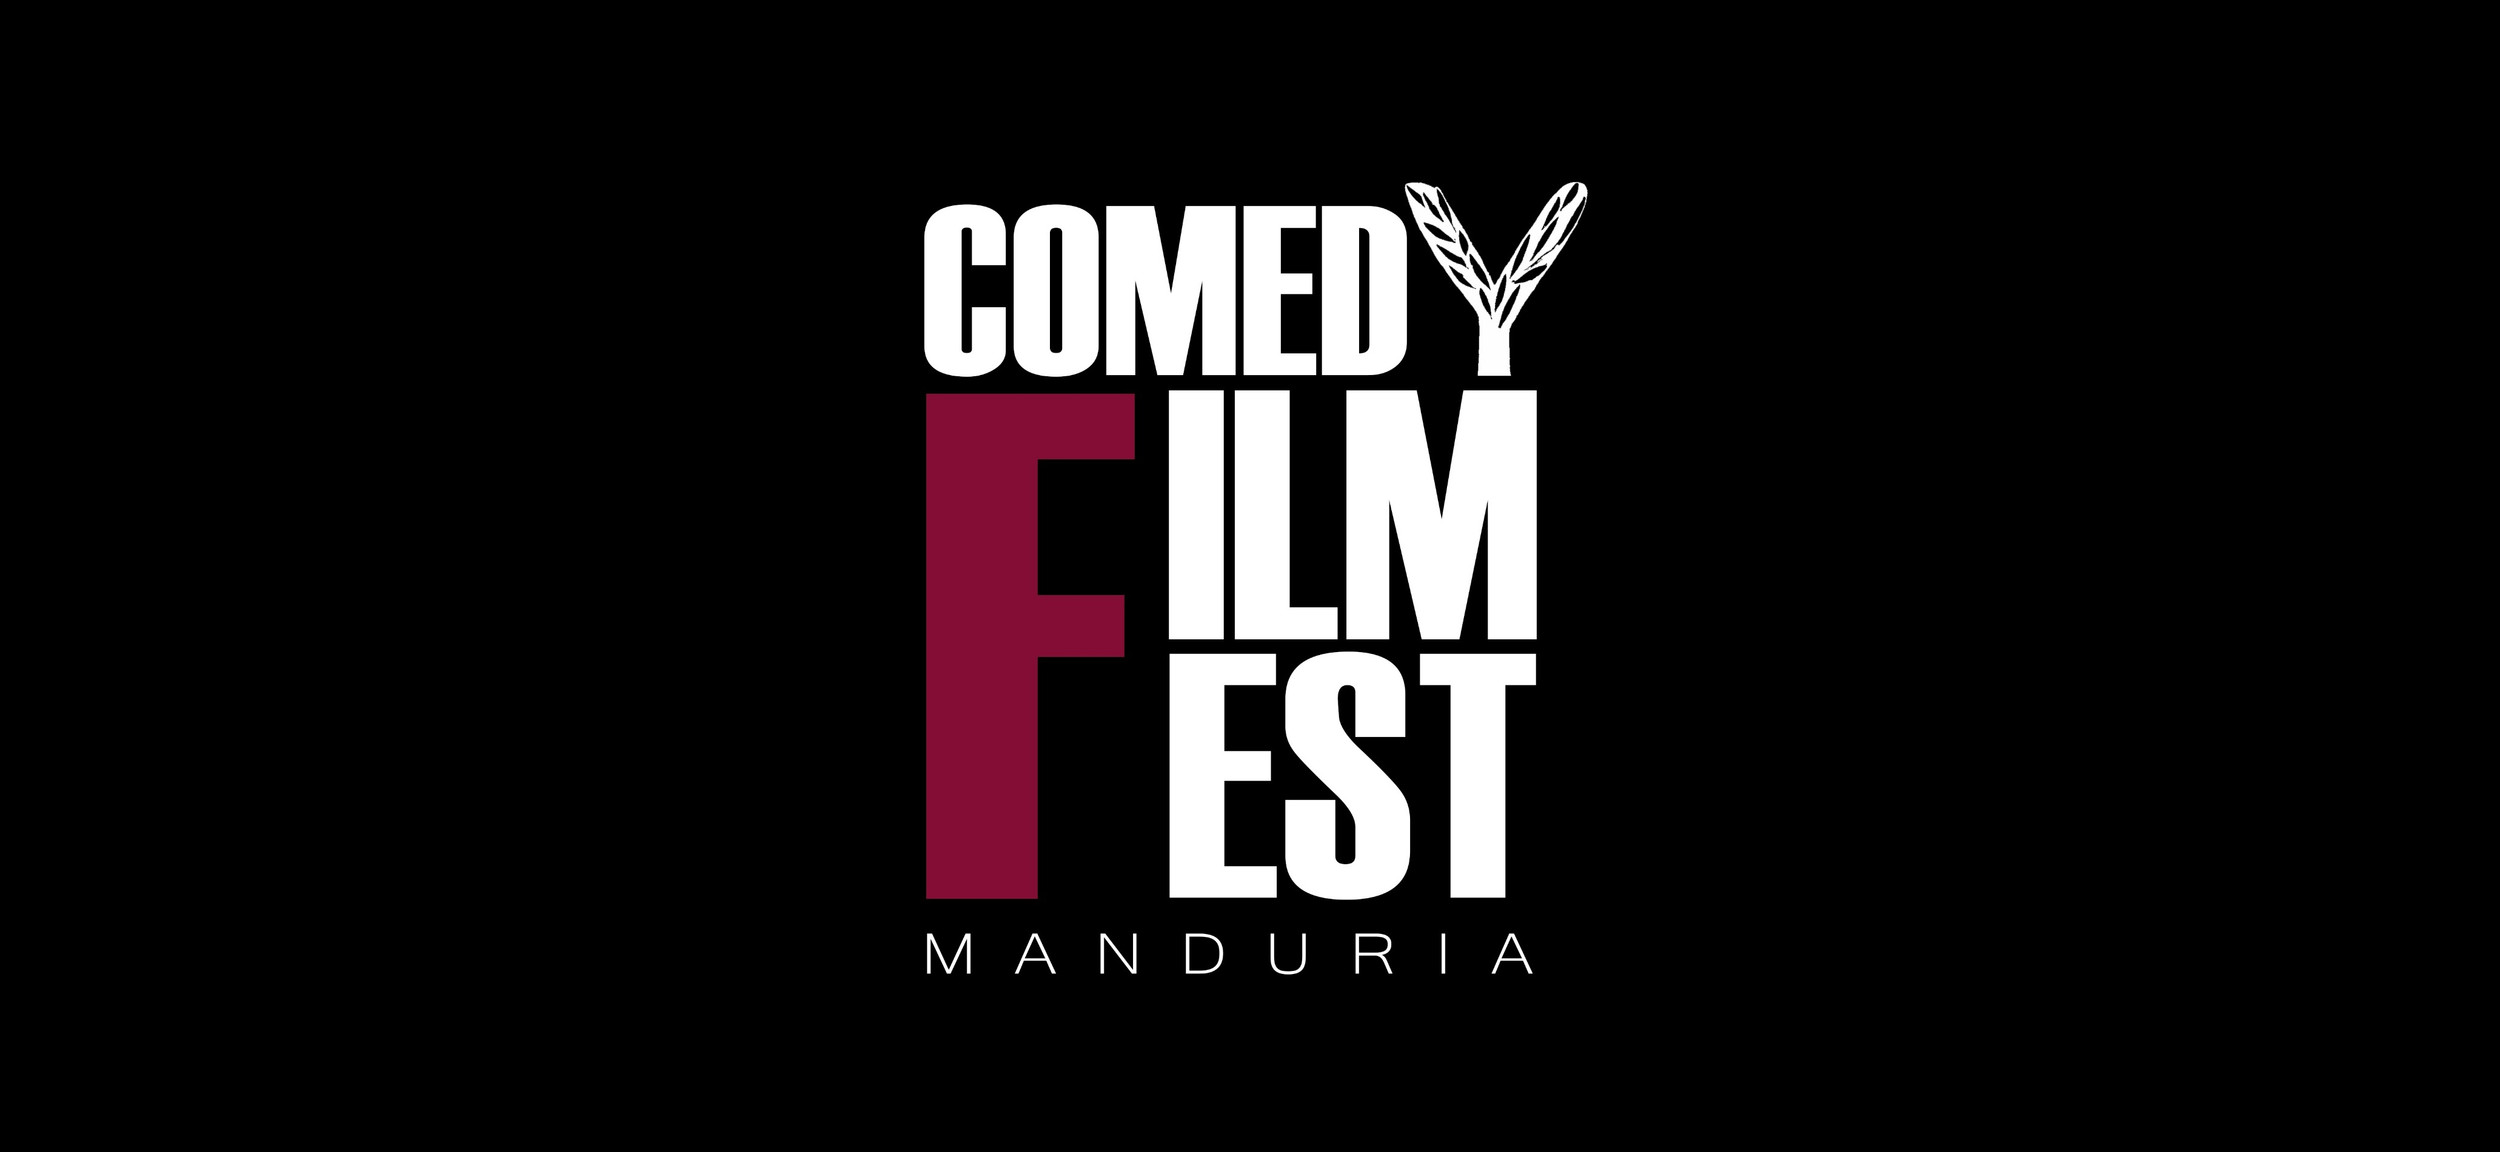 “COMEDY FILM FEST – MANDURIA”: LE NOVITÀ A UNA SETTIMANA DALL’EVENTO